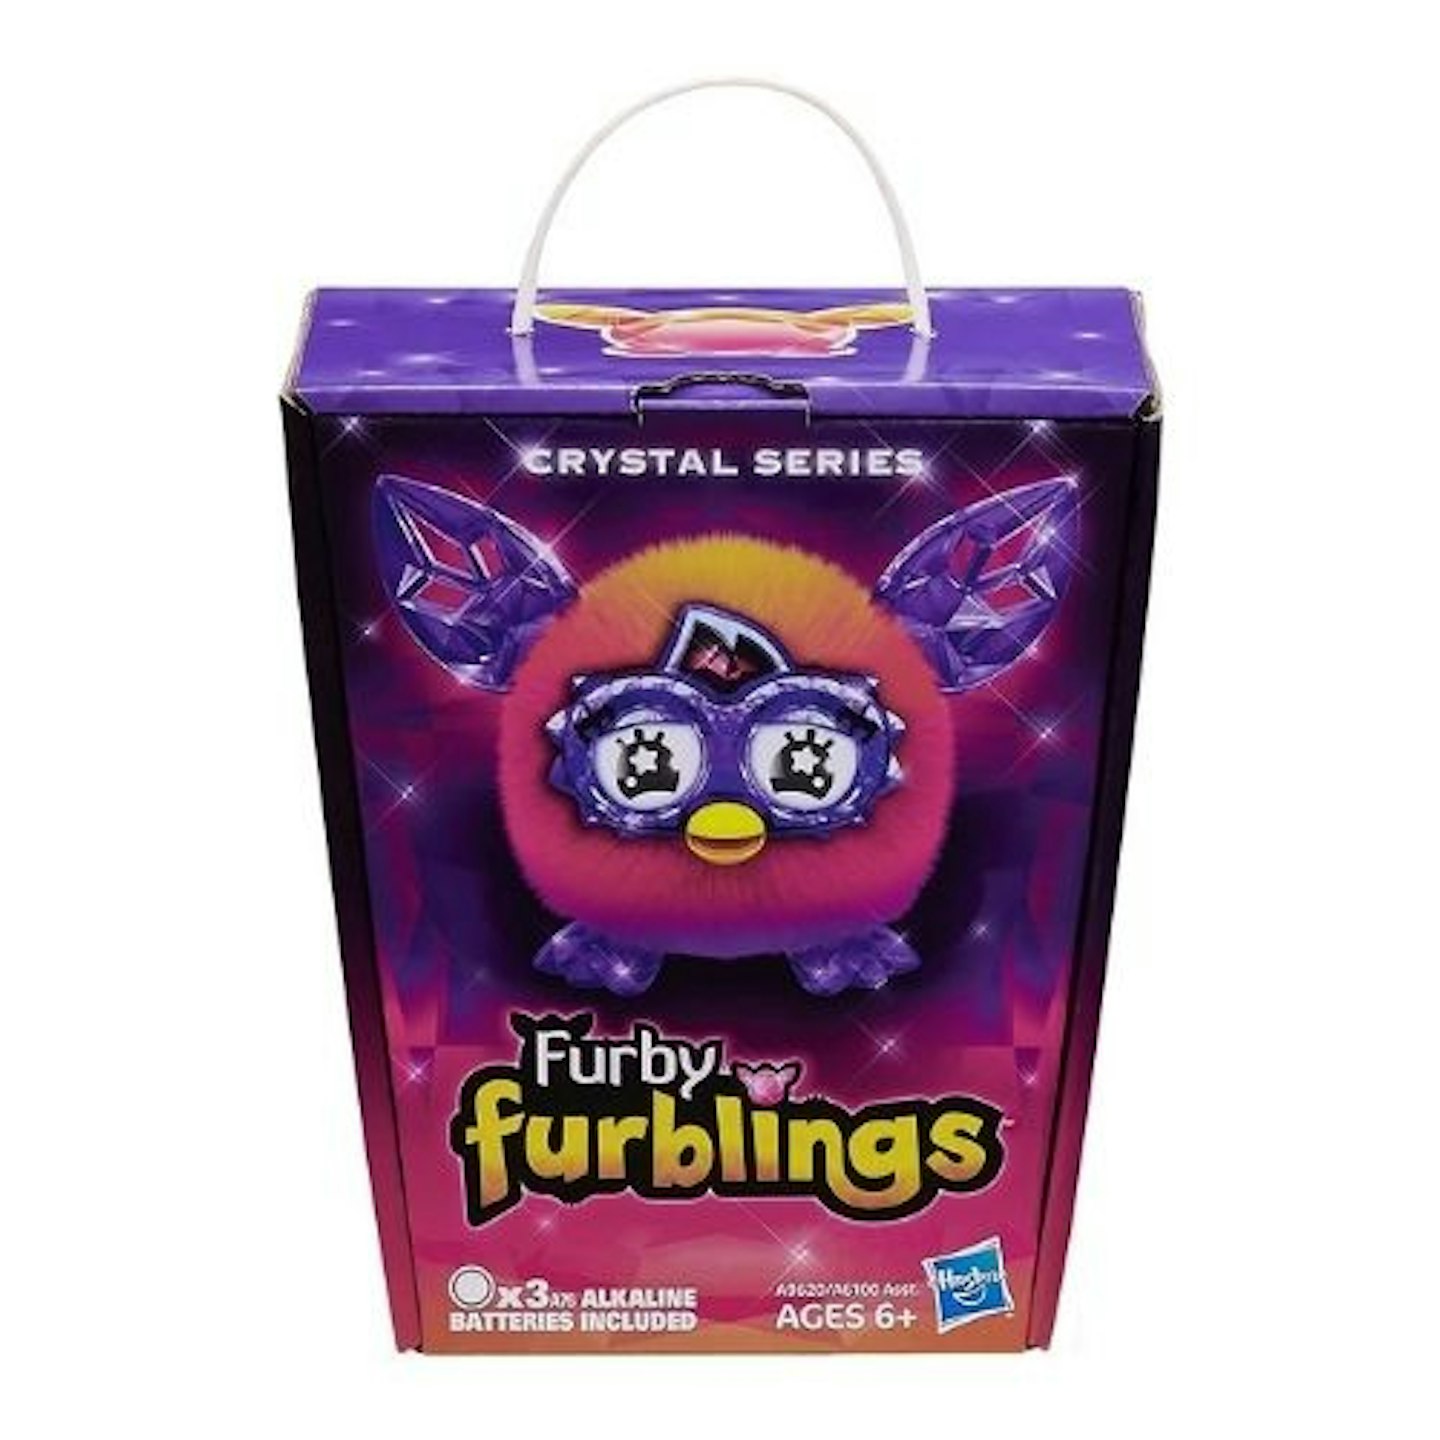 Furby Furblings Creature Plush